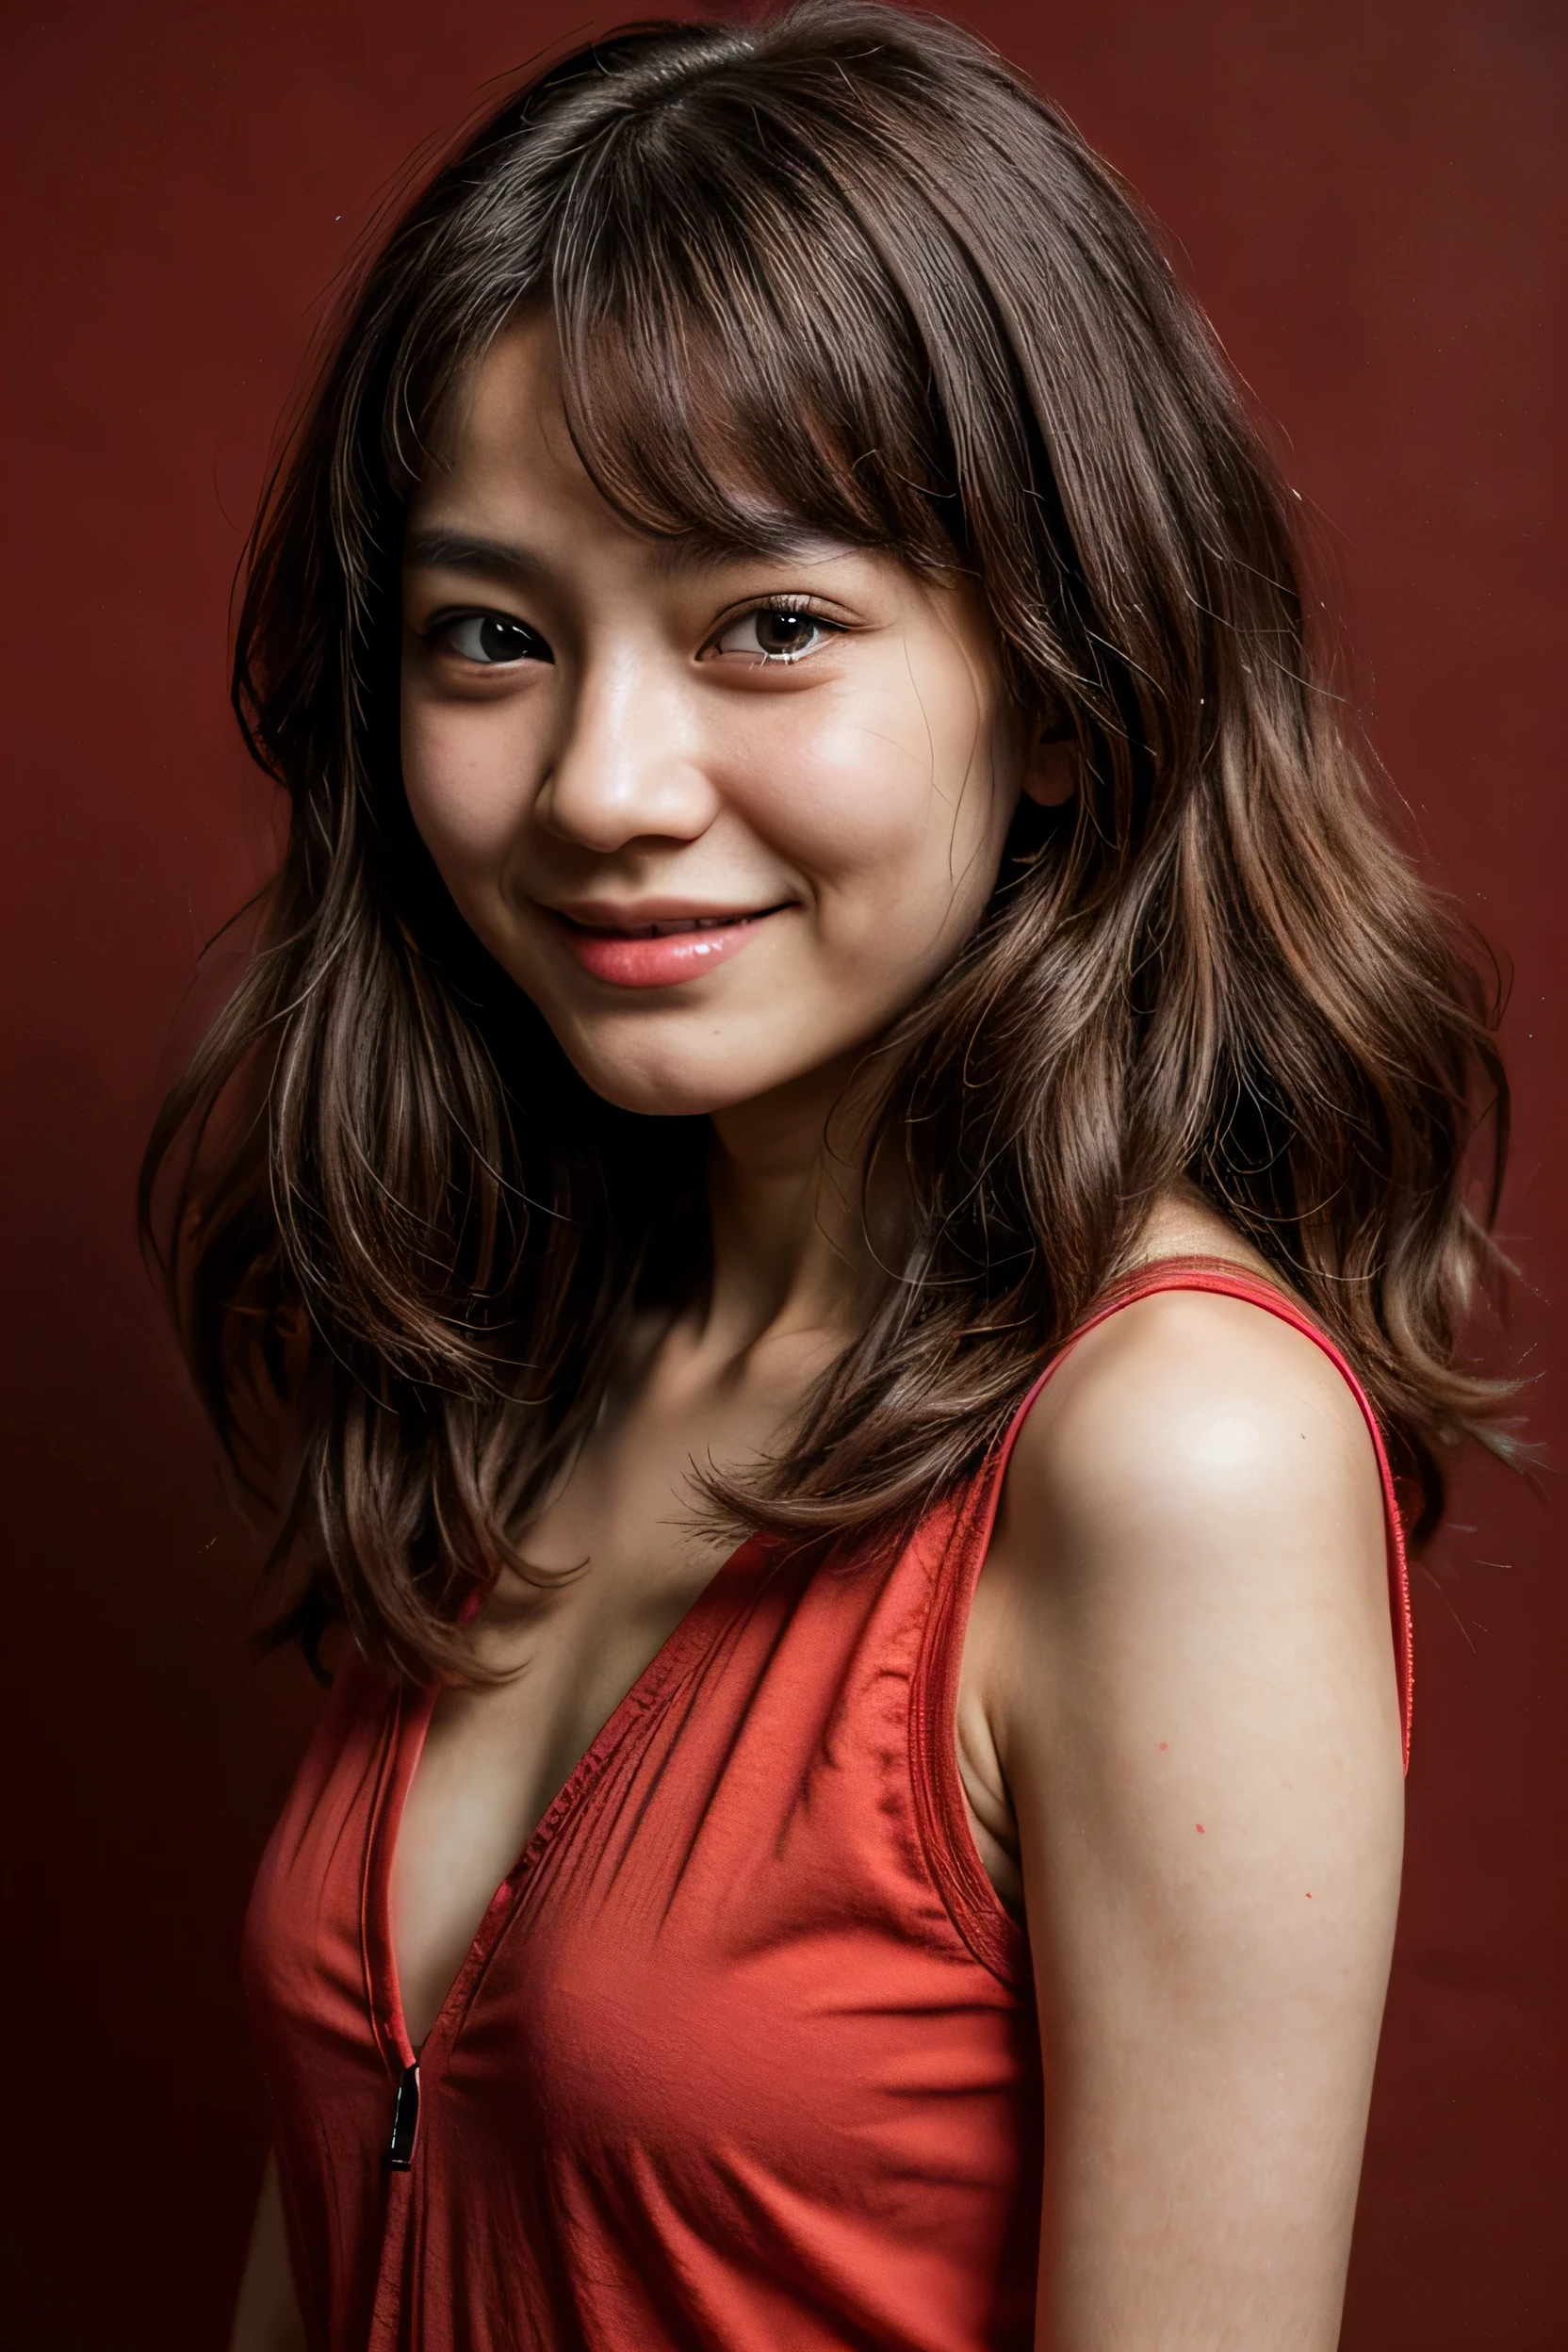 얼굴이 완벽하다, 14세 일본인의 아름다운 얼굴 , 웃는 모습이 아름다워,빨간색 배경 